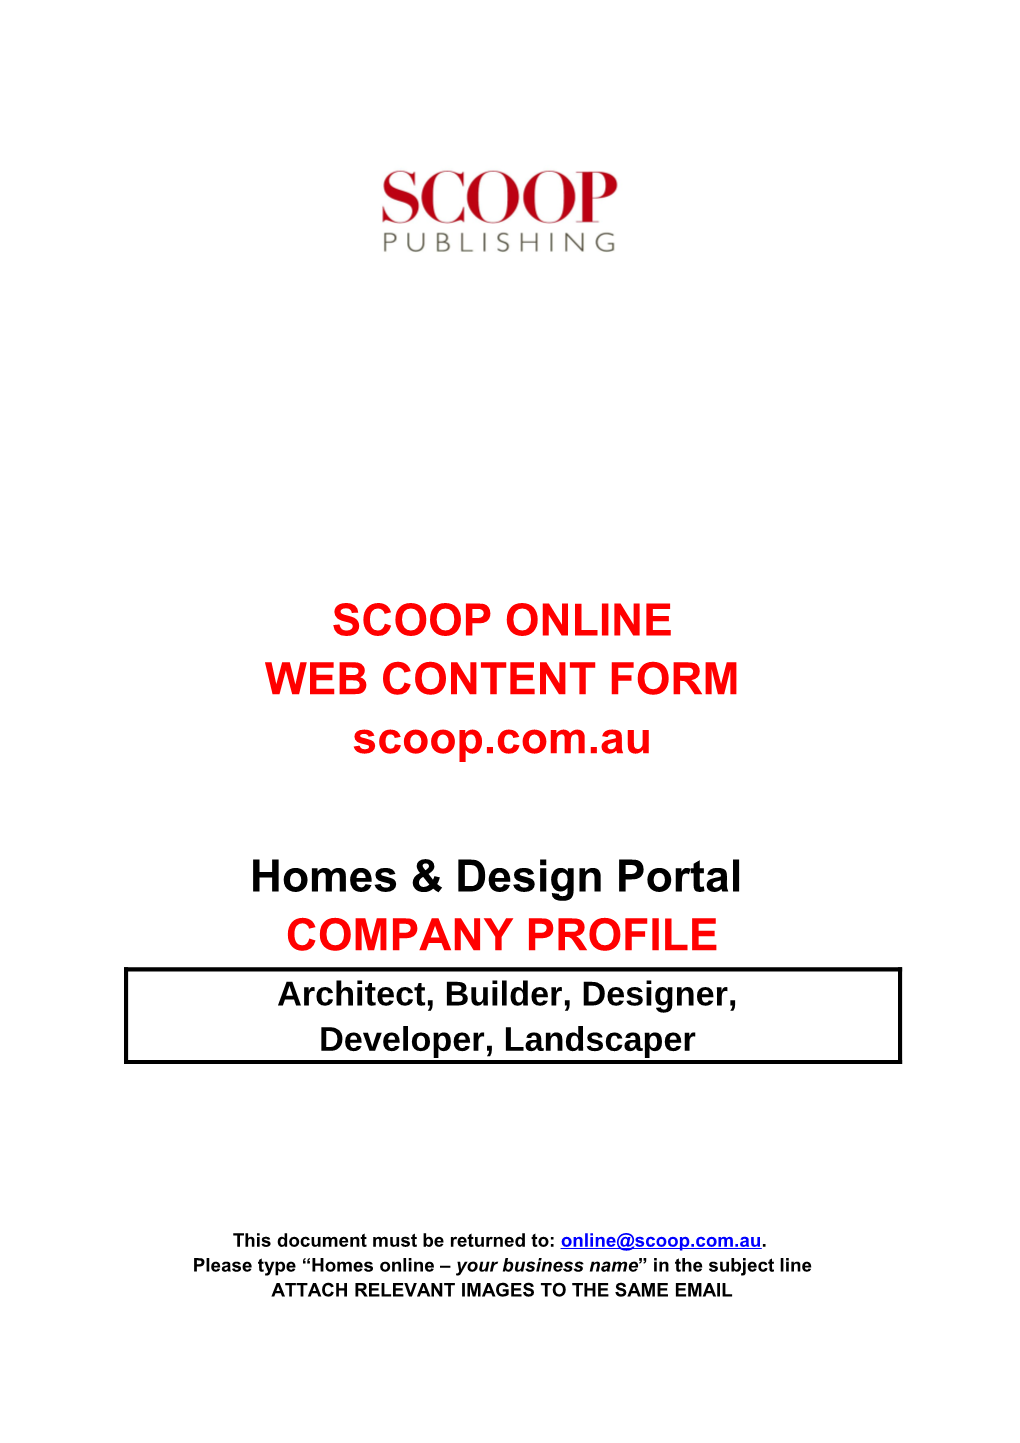 Web Content Form